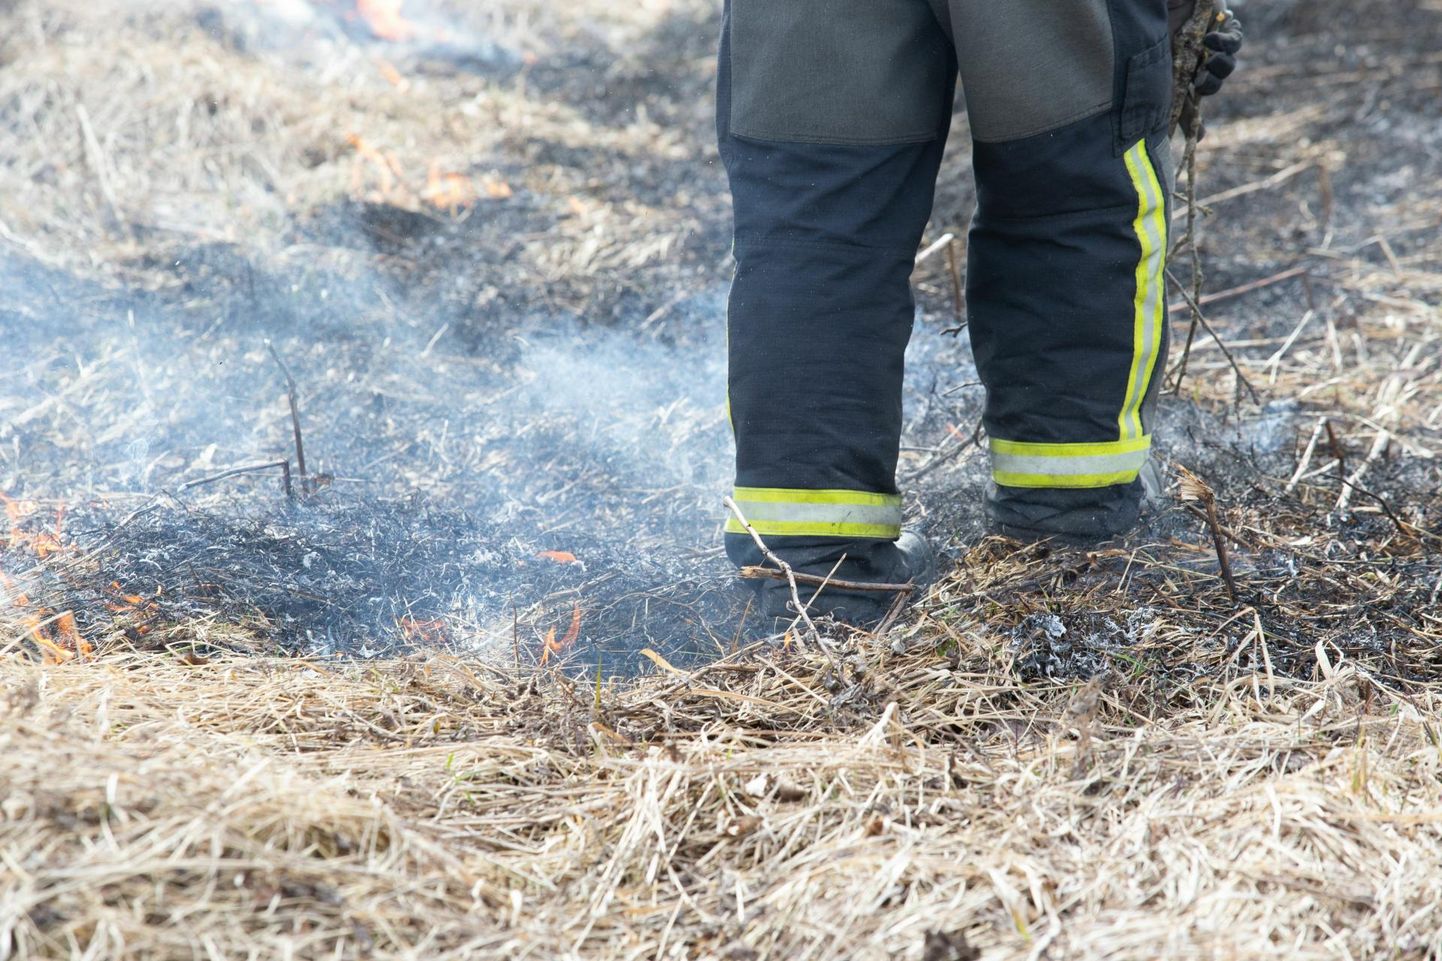 Спасатели потушили лесной пожар, направлявшийся к дому, за 20 минут. Фото иллюстративное.